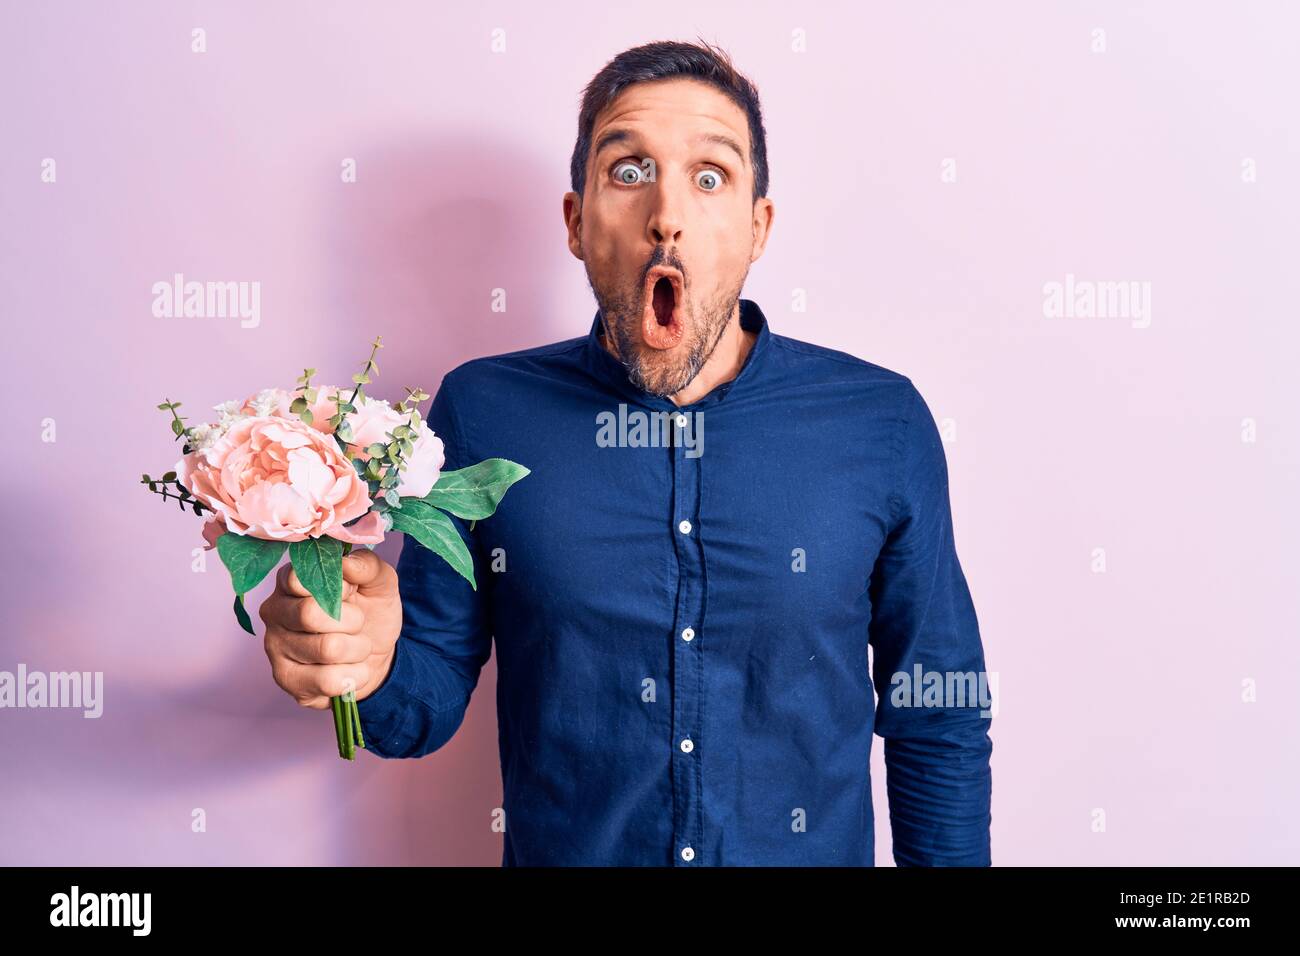 Junge gutaussehende romantischen Mann hält schöne Blumenstrauß über rosa Hintergrund verängstigt und erstaunt mit offenem Mund für Überraschung, Unglauben Gesicht Stockfoto